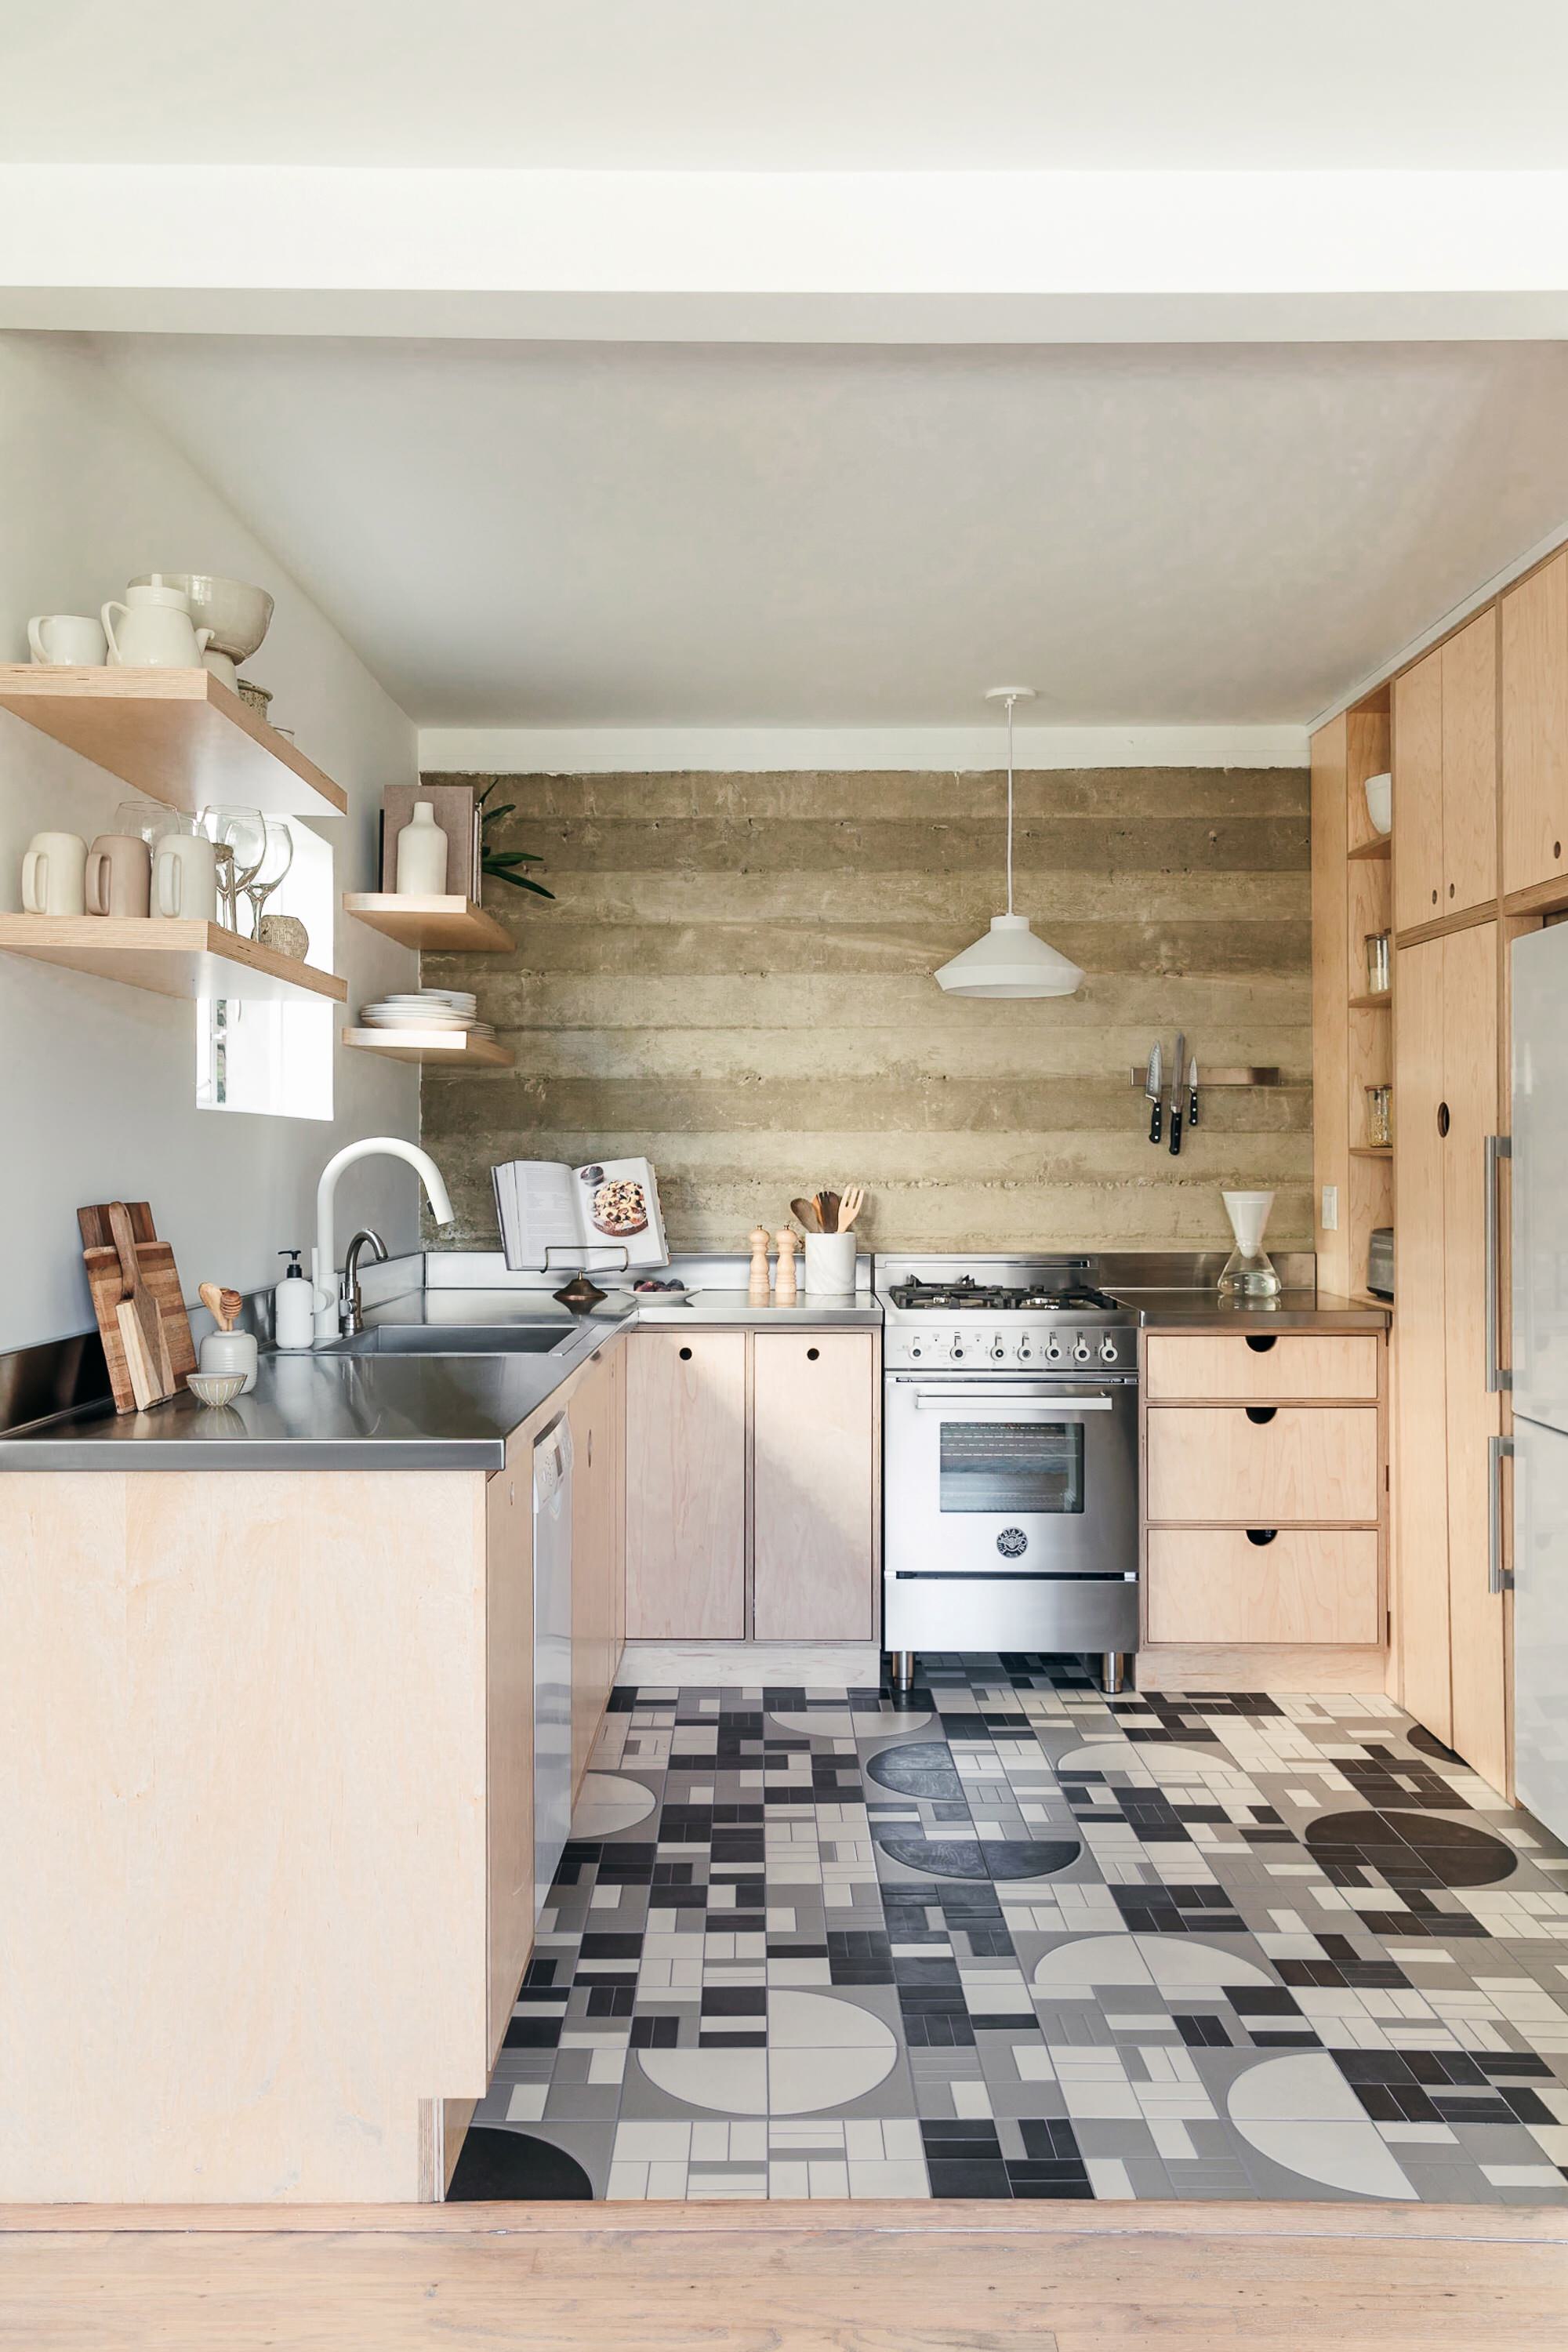 White Tile Floor Kitchen Ideas, White Tile Kitchen